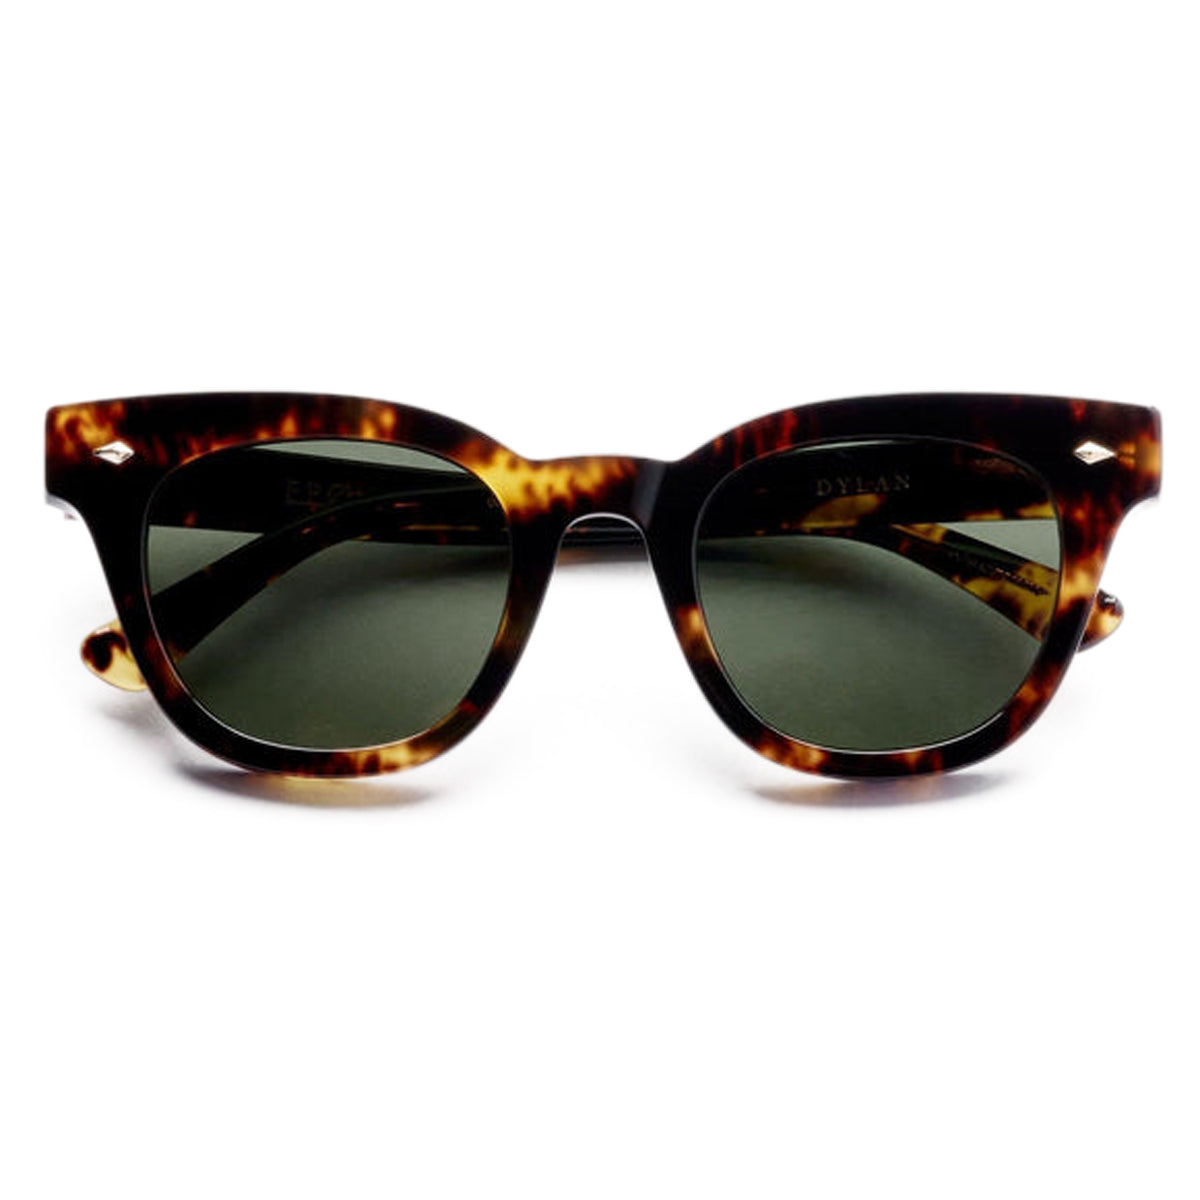 Epokhe Dylan Sunglasses - Tortoise Polished/Green Polarised image 2